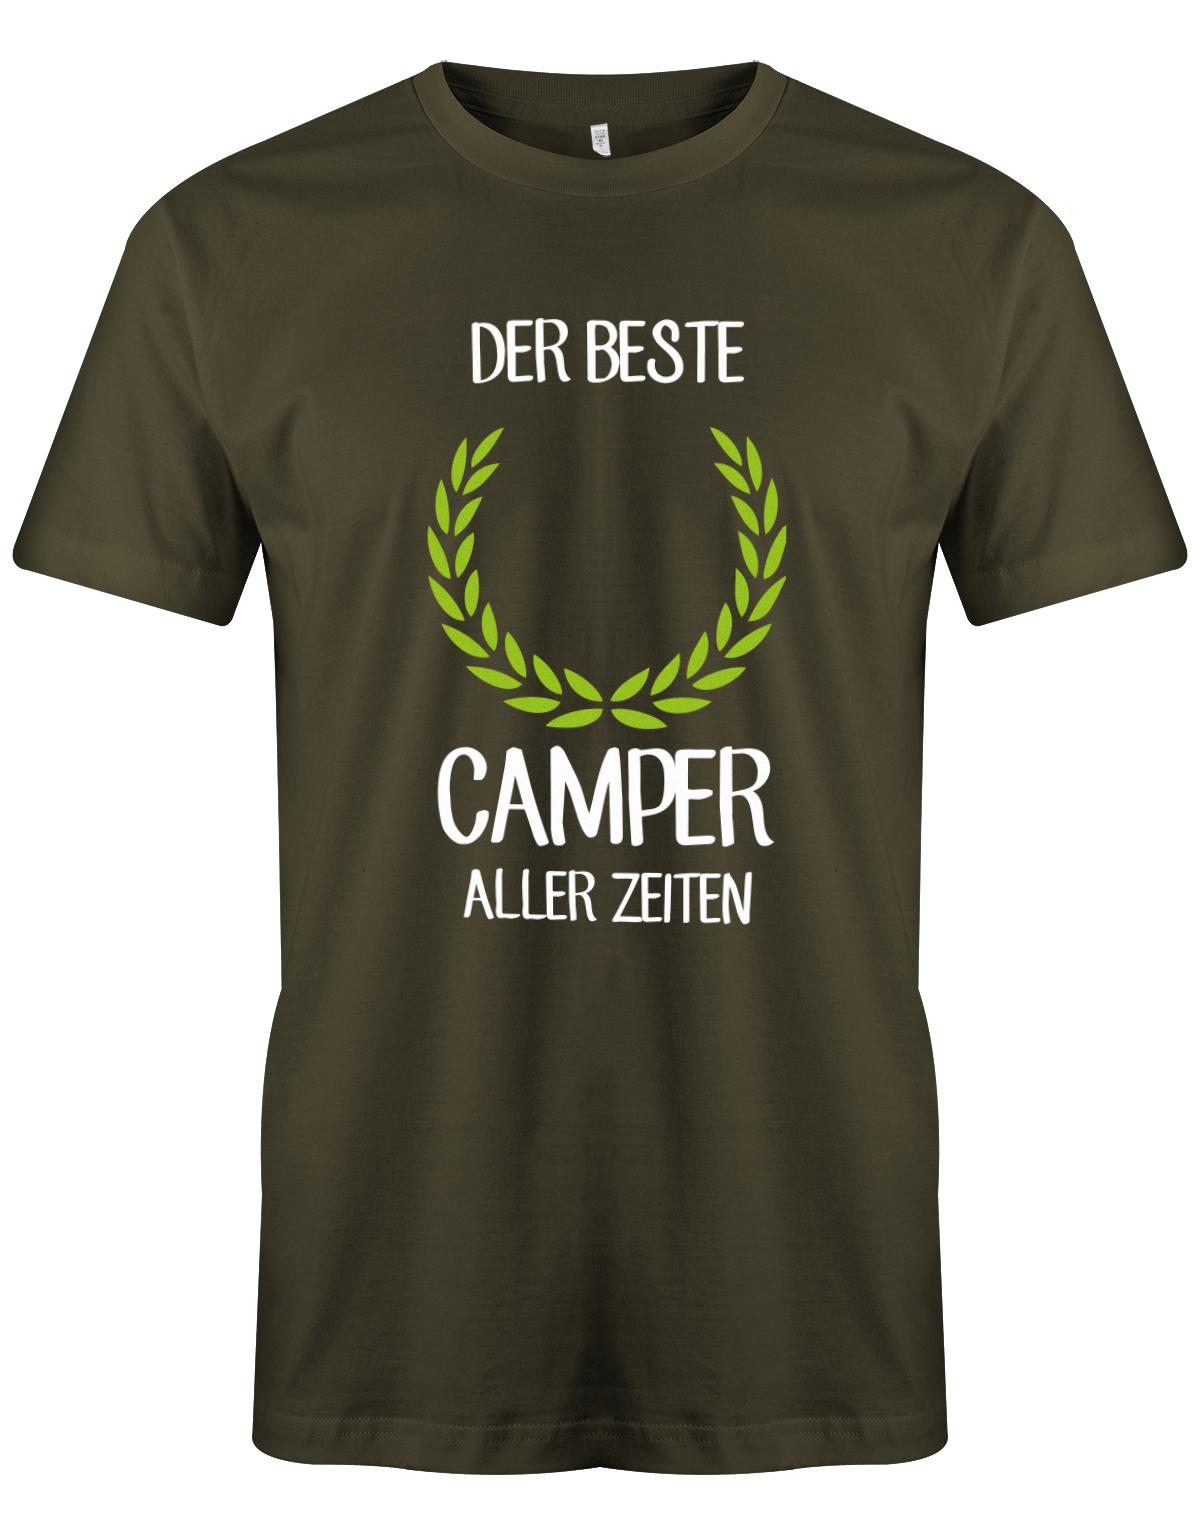 Der-beste-Camper-aller-zeiten-Herren-Camping-Shirt-Army